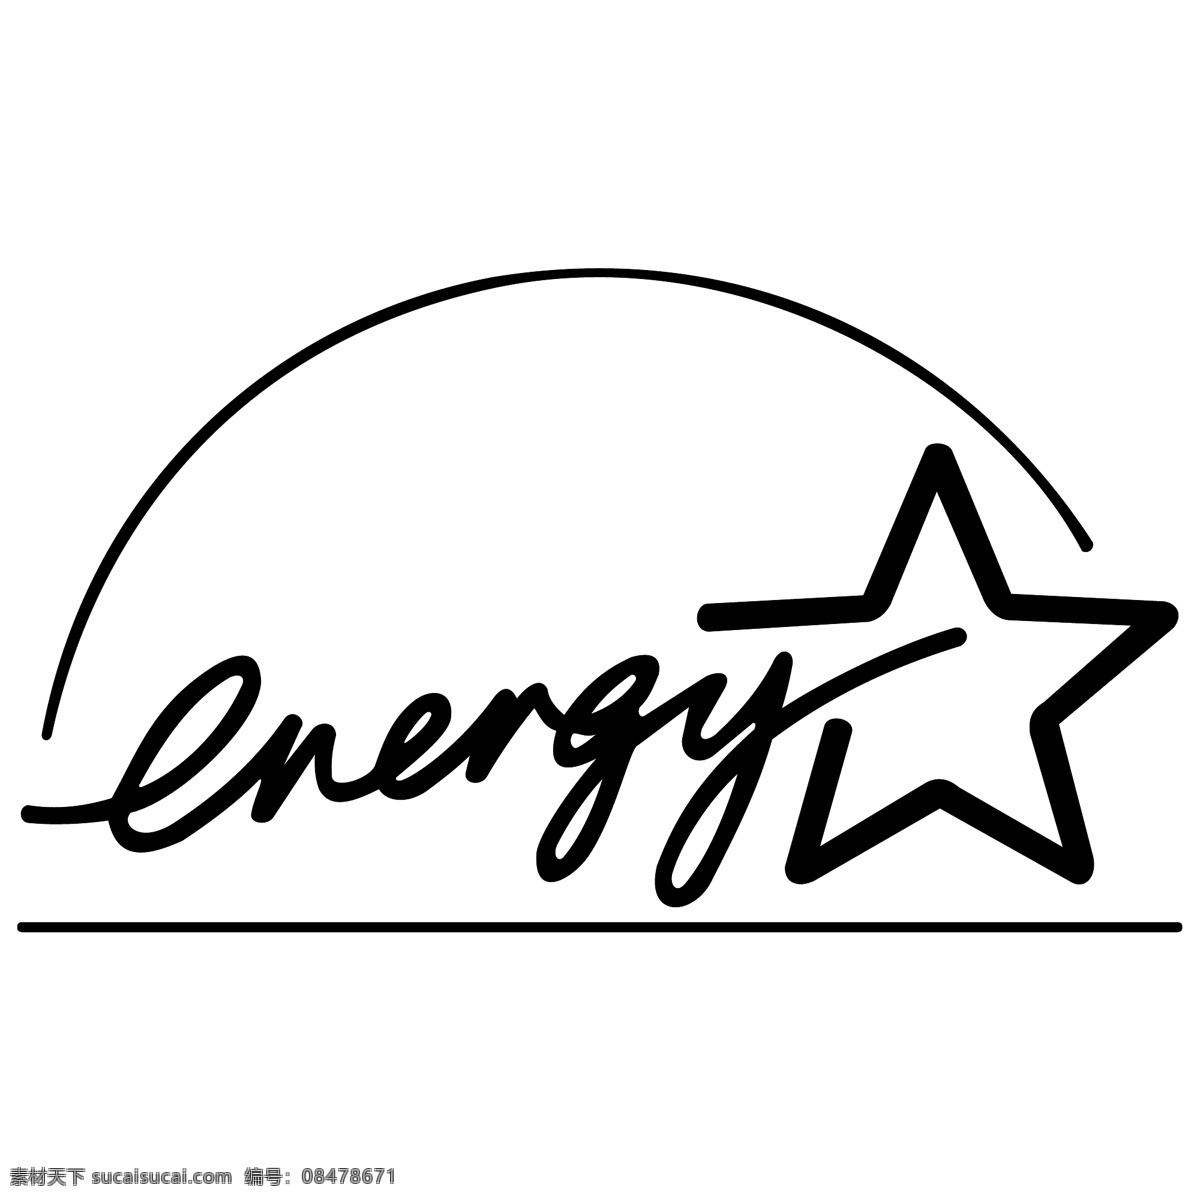 能源之星 自由 标志 免费 psd源文件 logo设计